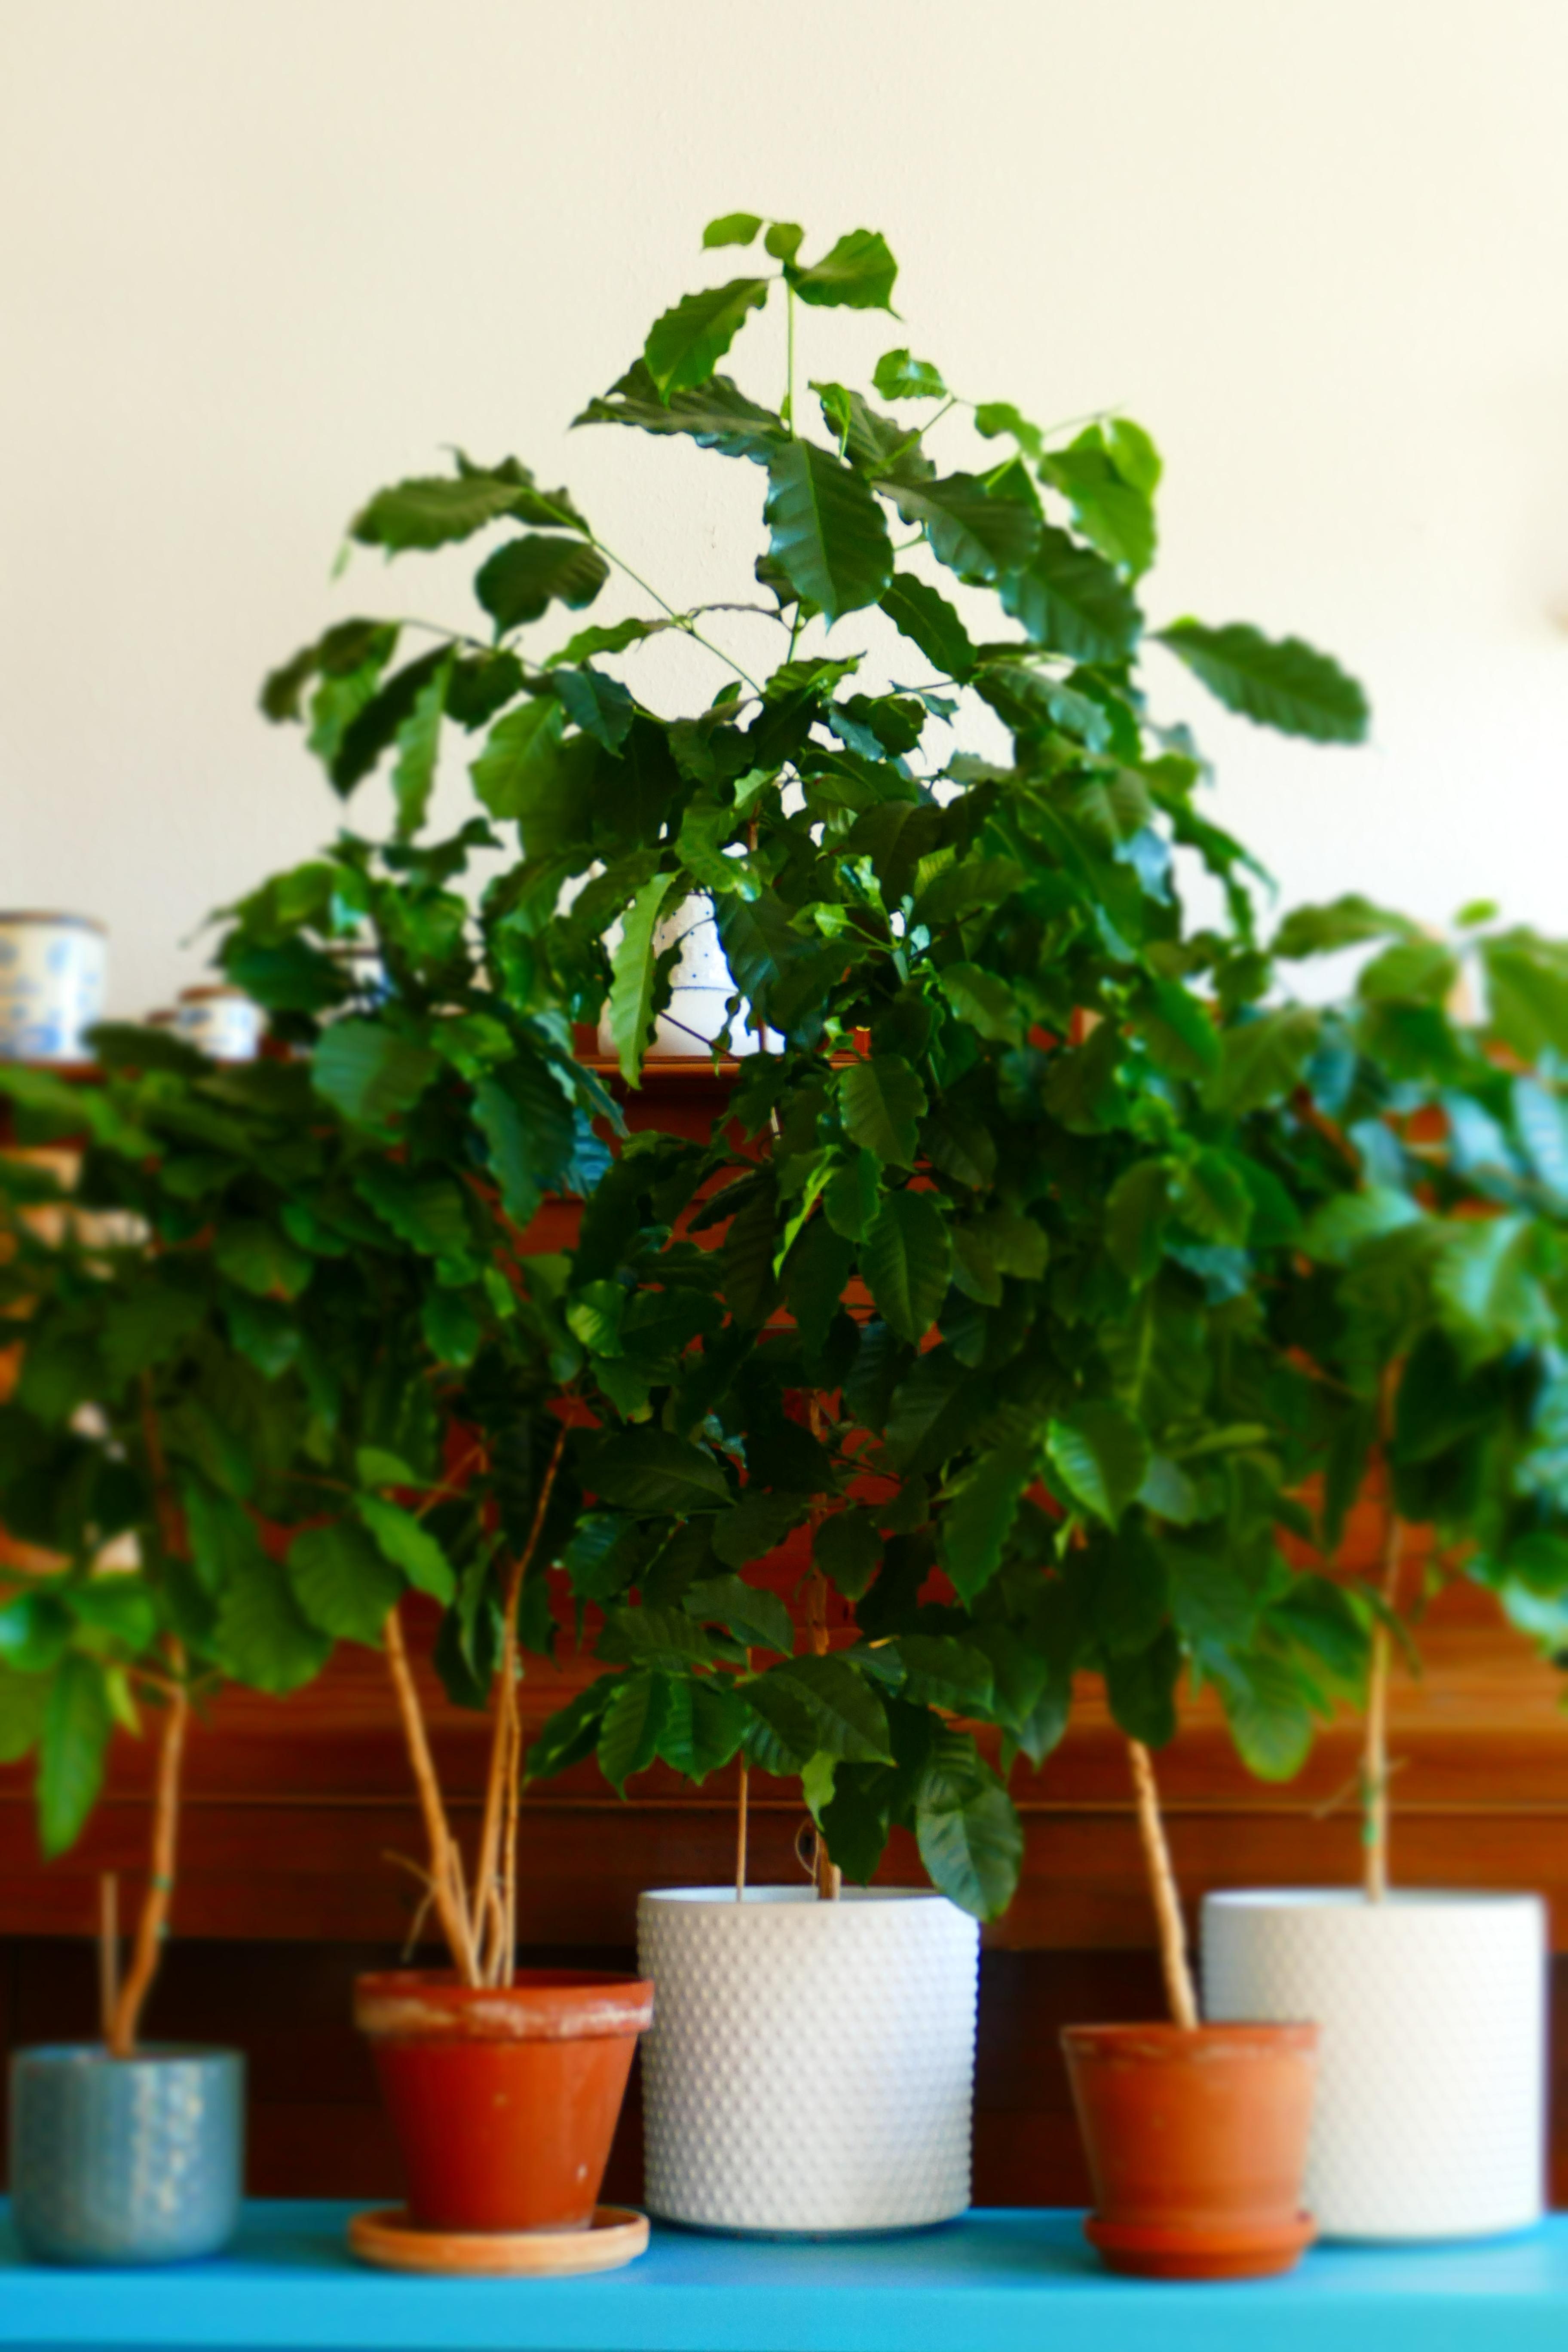 Meine liebste #zimmerpflanze sind meine Kaffeepflanzen...eine eigene kleine Plantage 😊
#livingchallenge